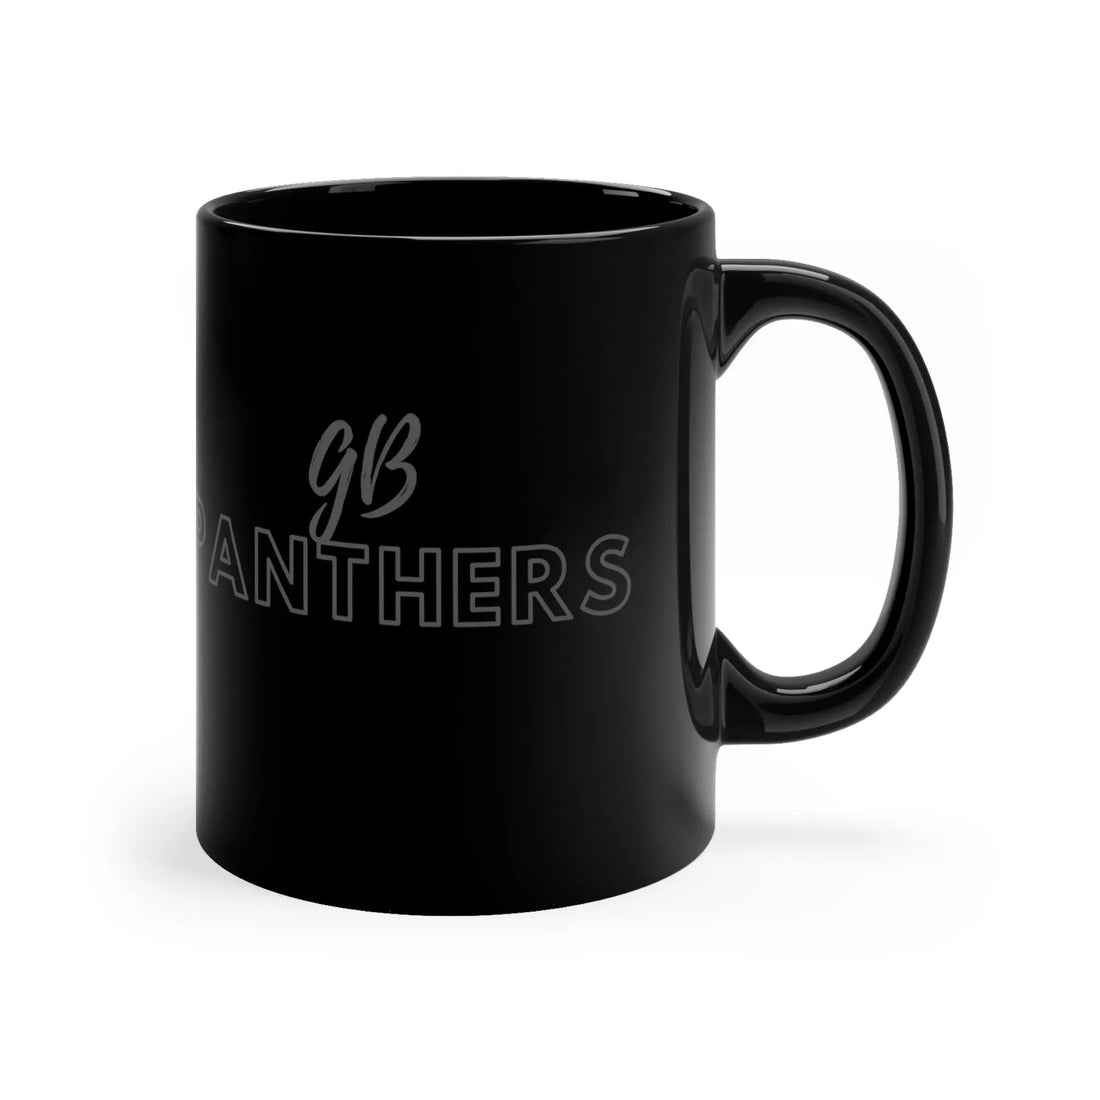 GB Panthers 11oz Black Mug - Mug - Positively Sassy - GB Panthers 11oz Black Mug